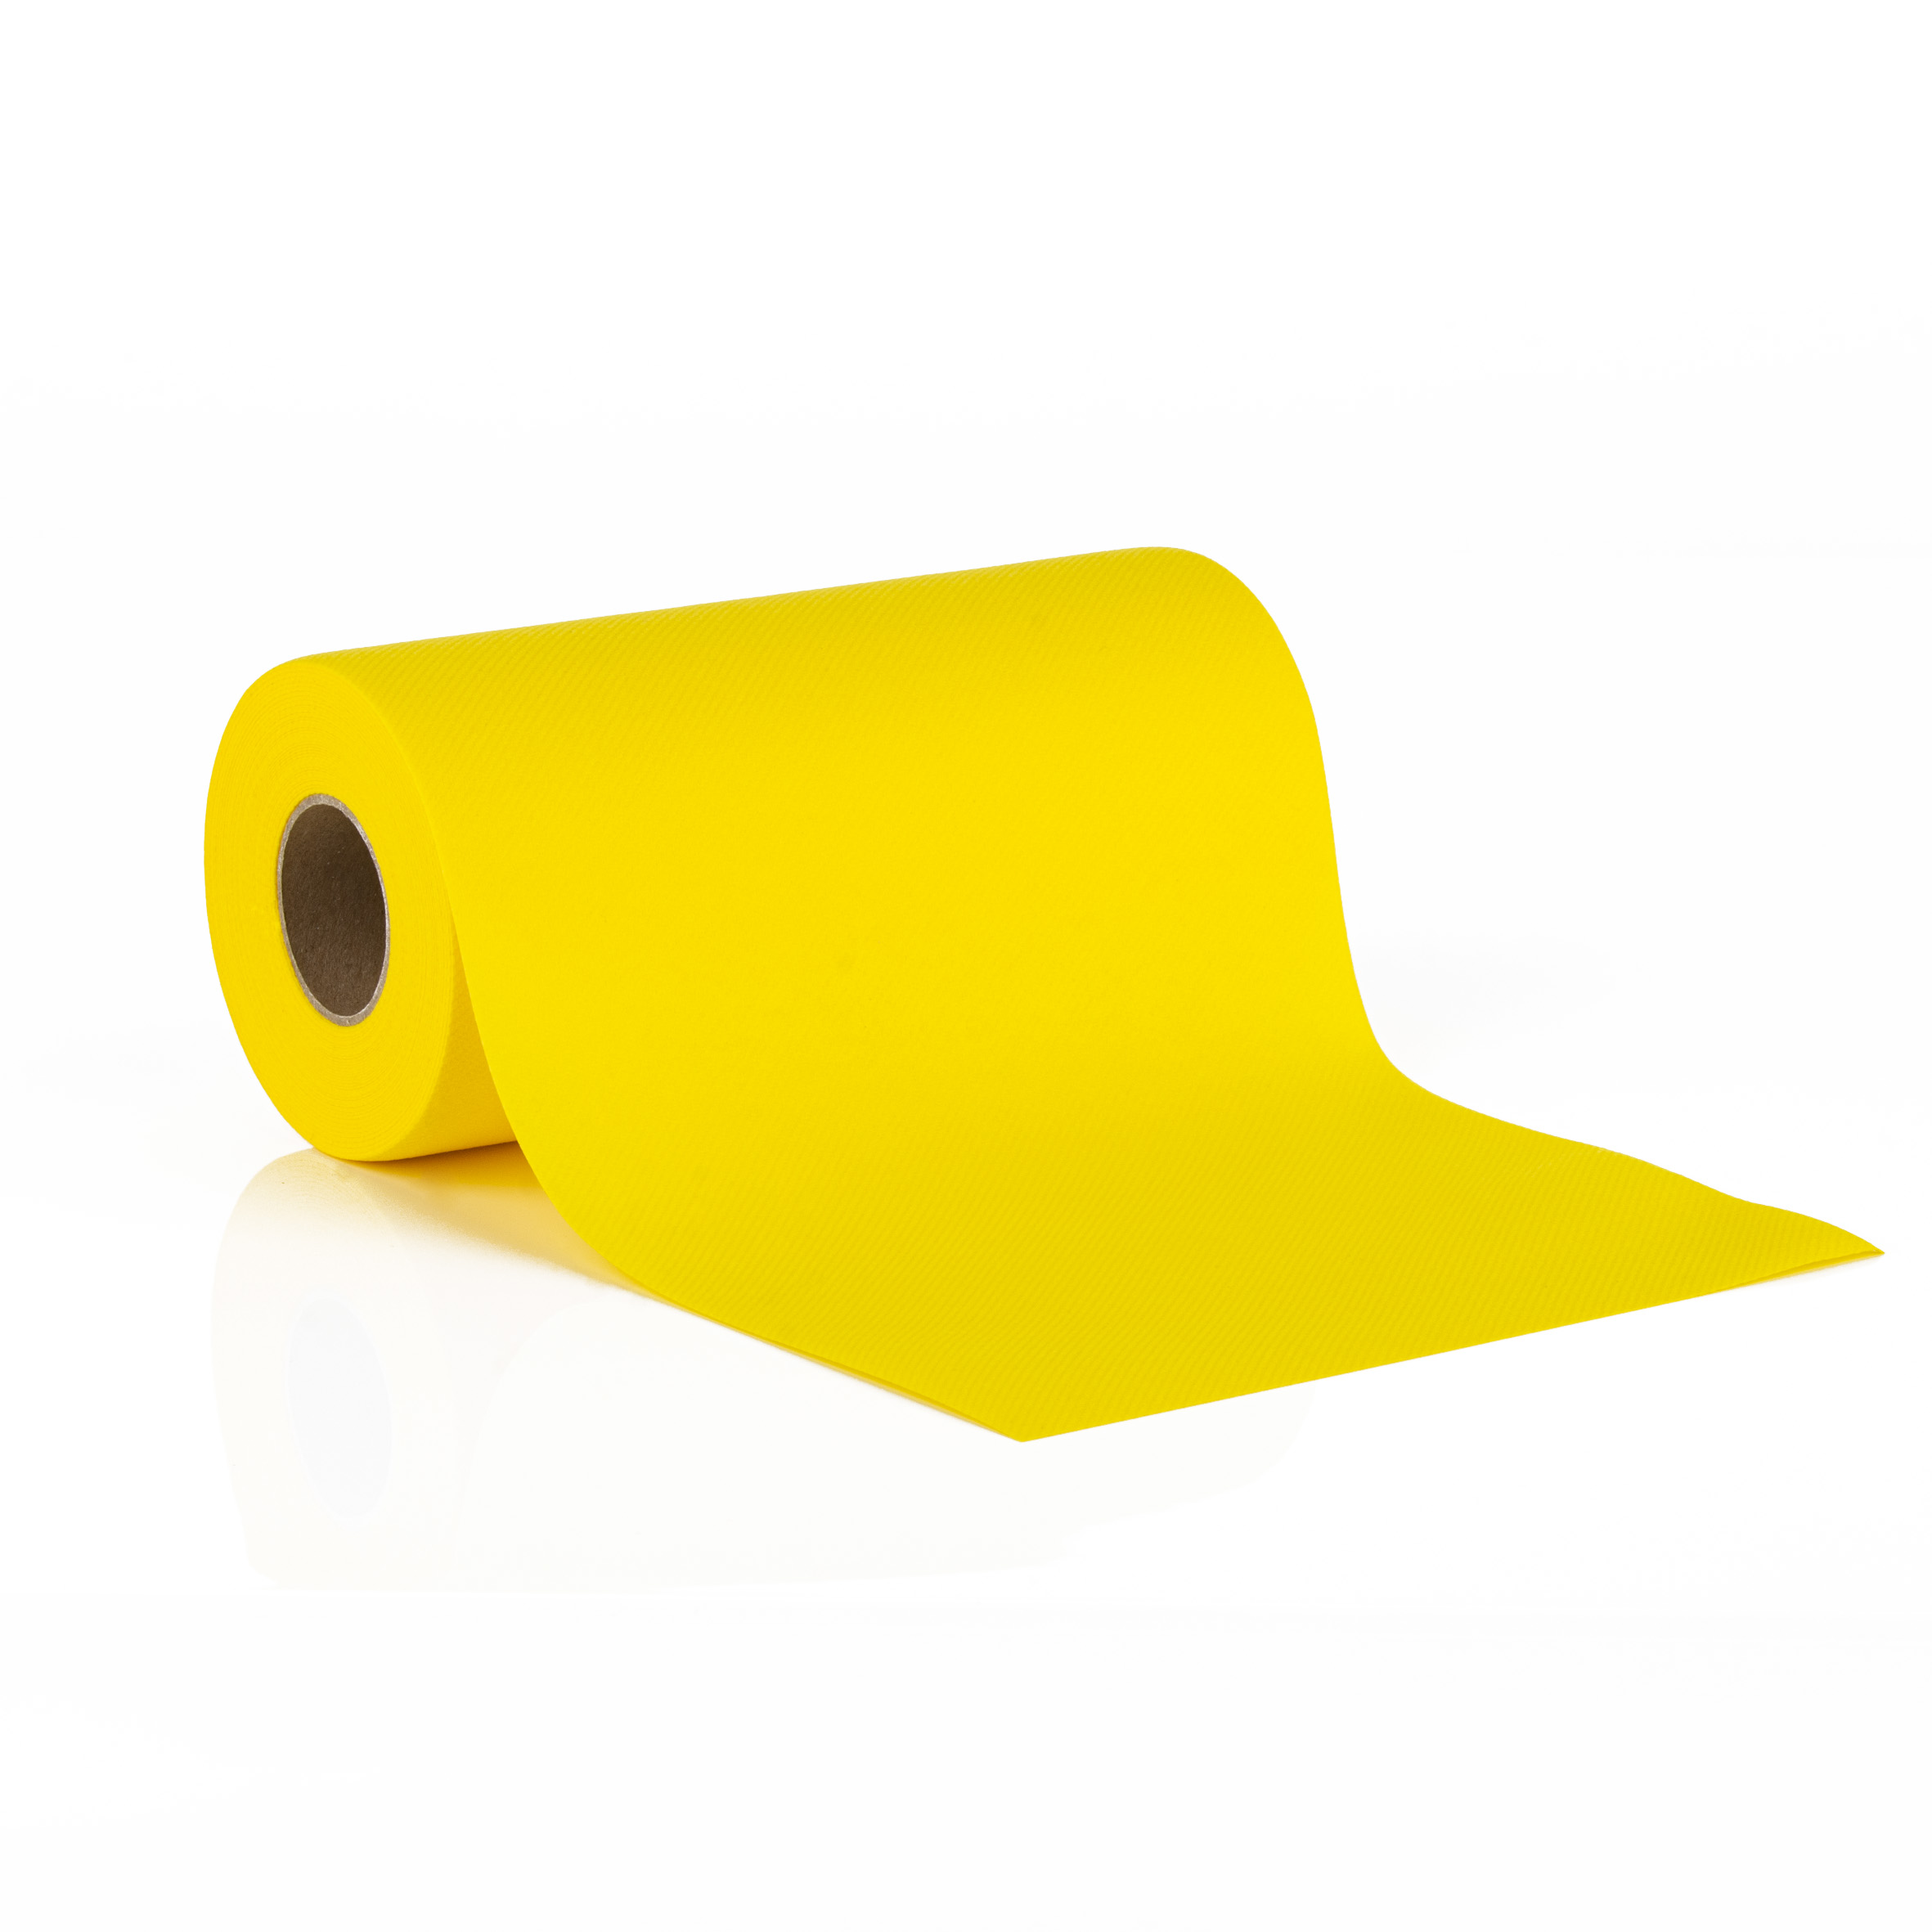 Mank Tischbänder Linclass 20 cm x 20 m, Basic gelb